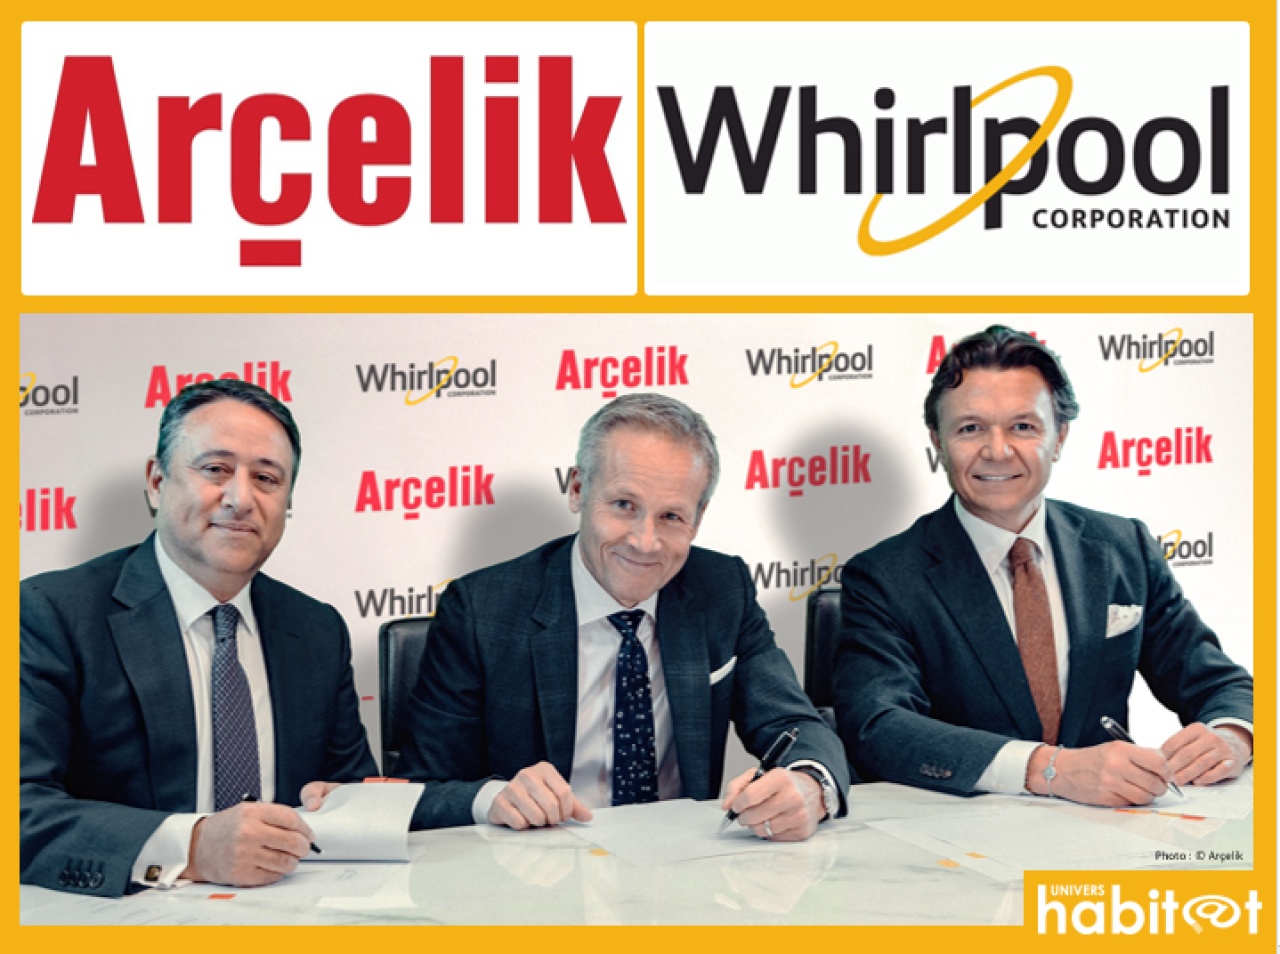 Arçelik s’associe à Whirlpool pour former une nouvelle entreprise européenne autonome d’appareils ménagers